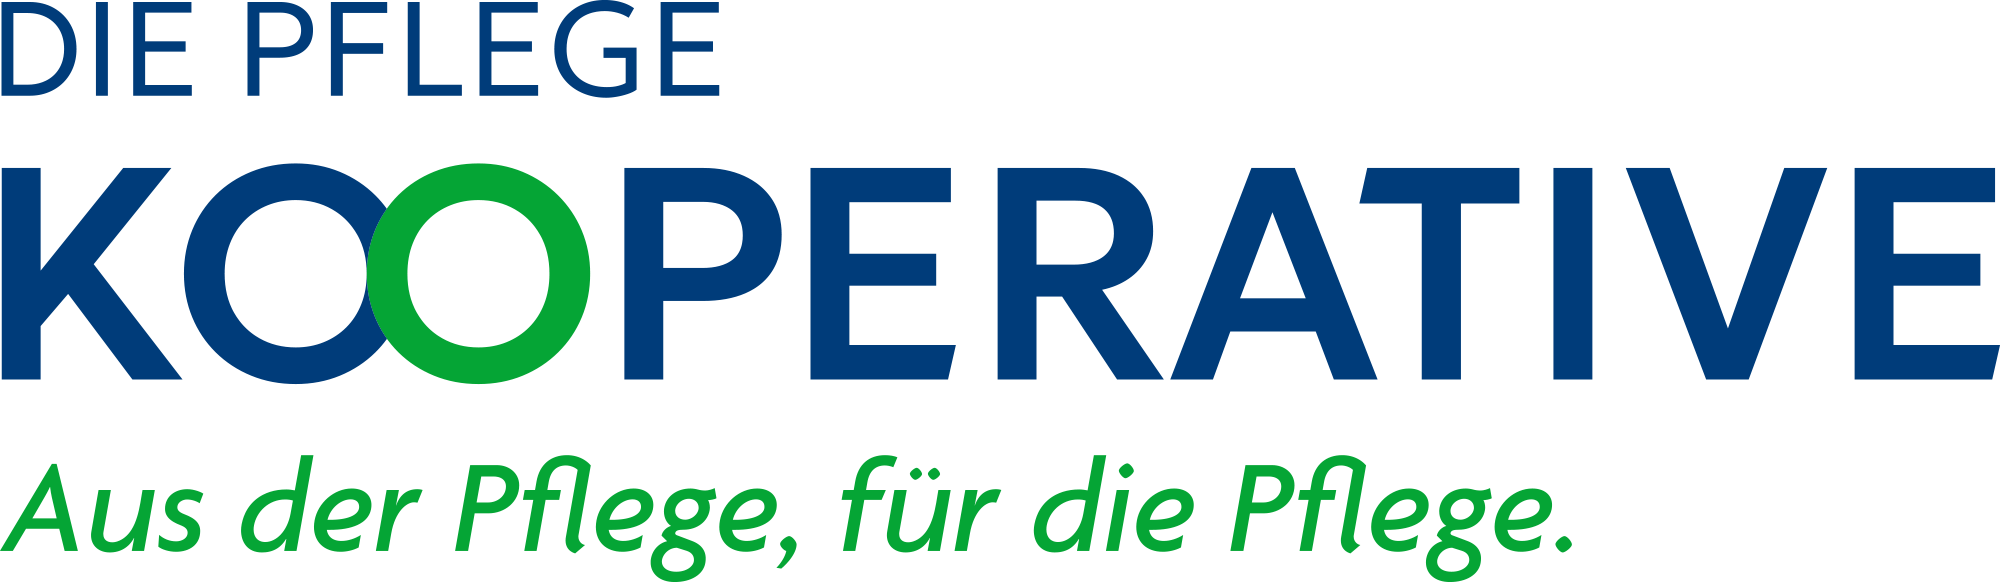 diepflegekooperative.de Logo